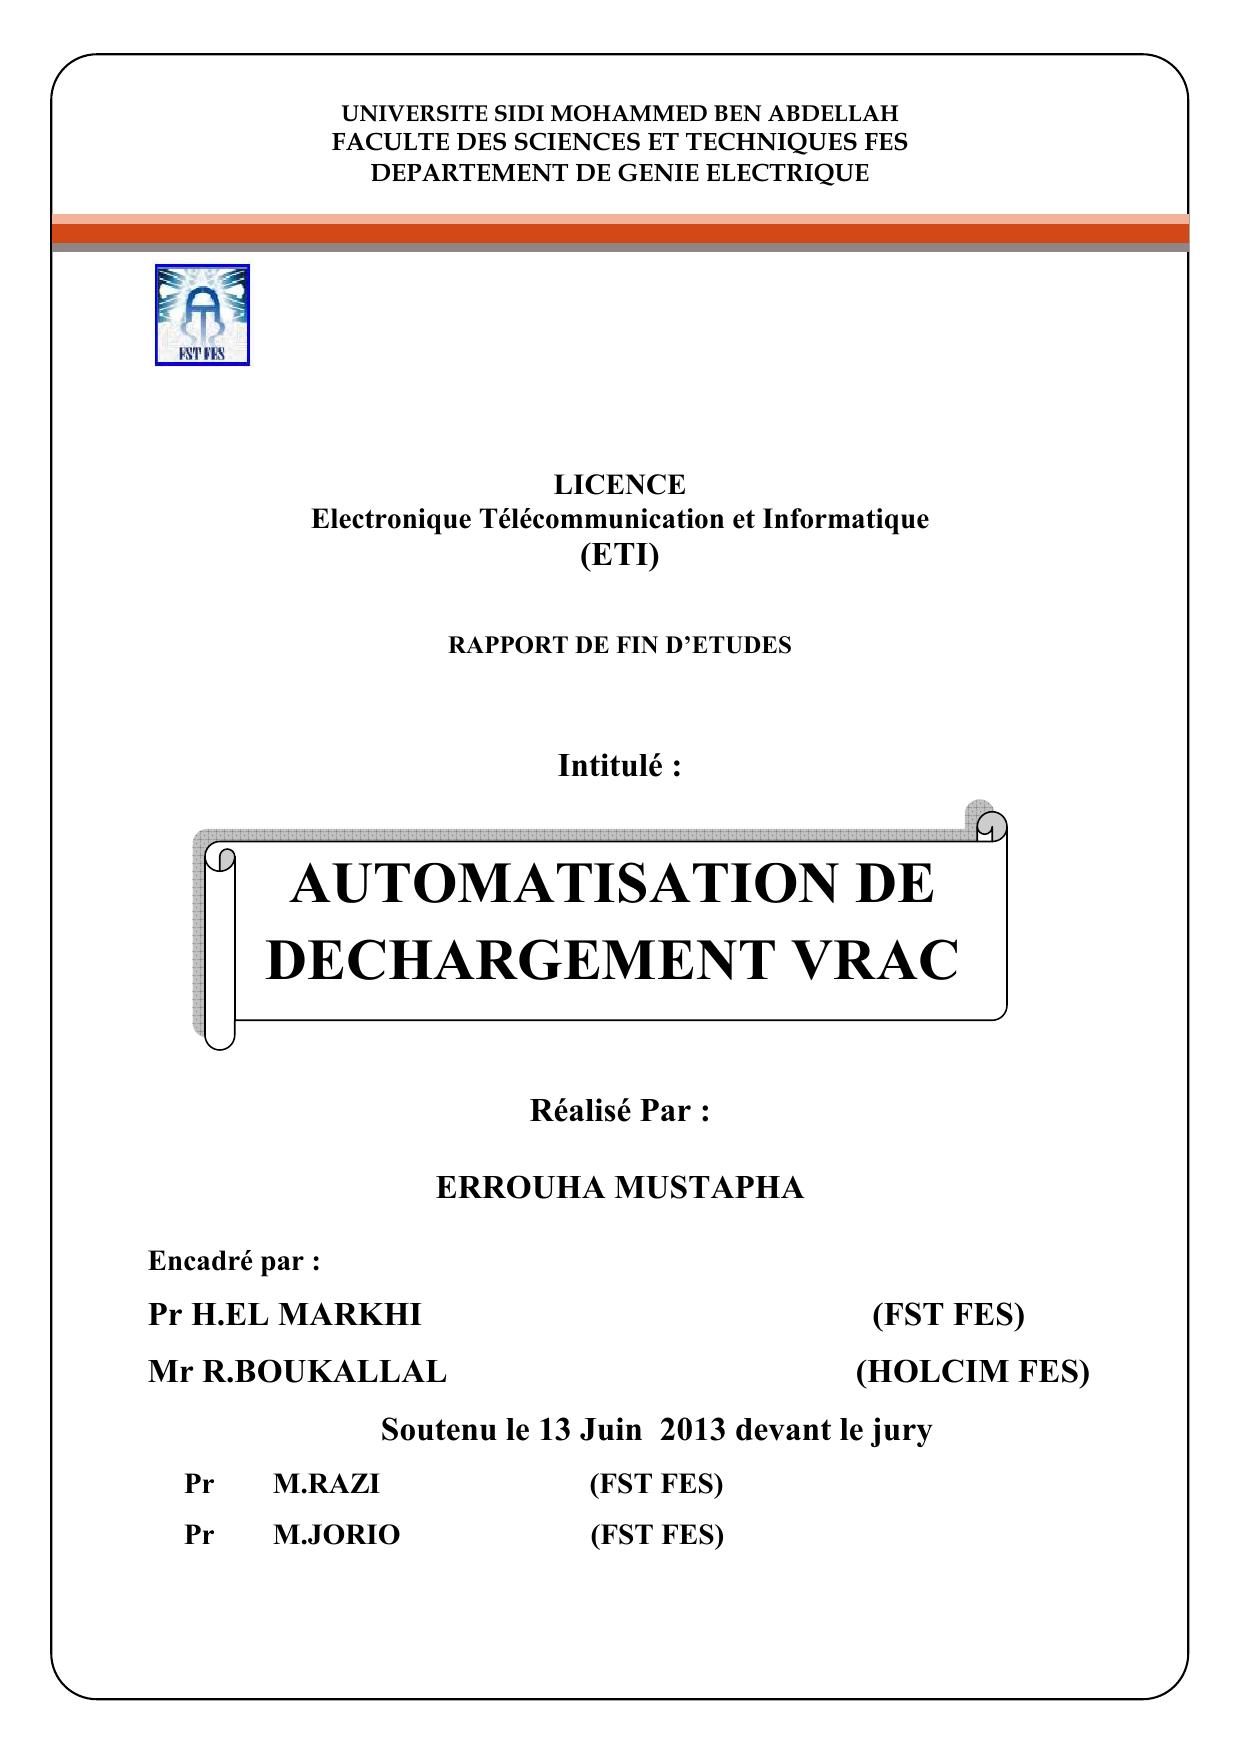 AUTOMATISATION DE DECHARGEMENT VRAC